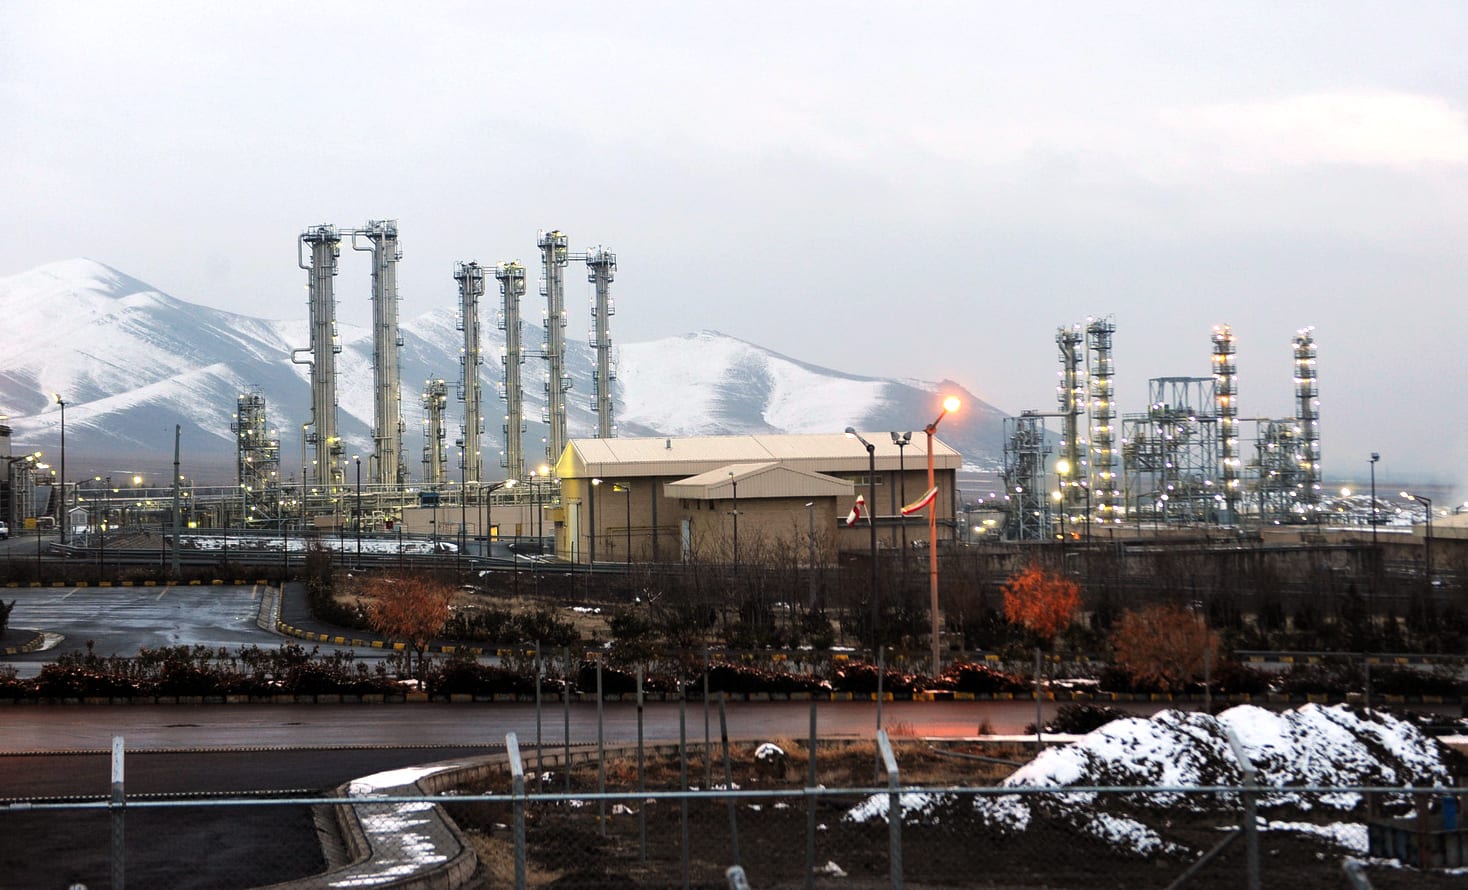 وكالة الطاقة الذرية توثق تجاوز مخزون اليورانيوم المخصب الإيراني 300 كغ